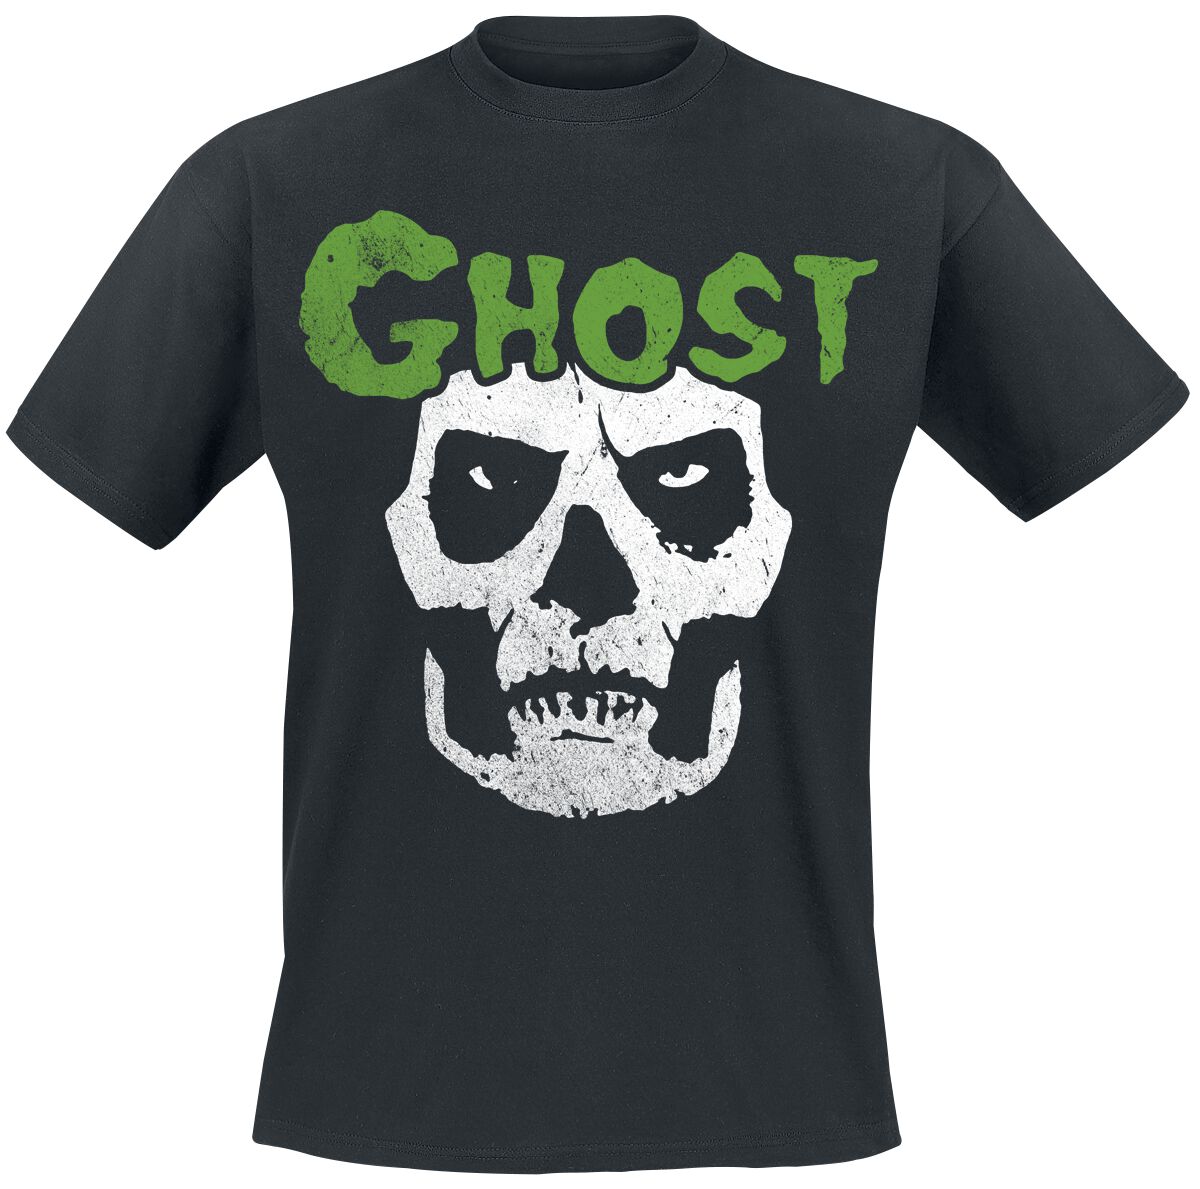 Ghost T-Shirt - Skull - S bis 4XL - für Männer - Größe 4XL - schwarz  - Lizenziertes Merchandise!